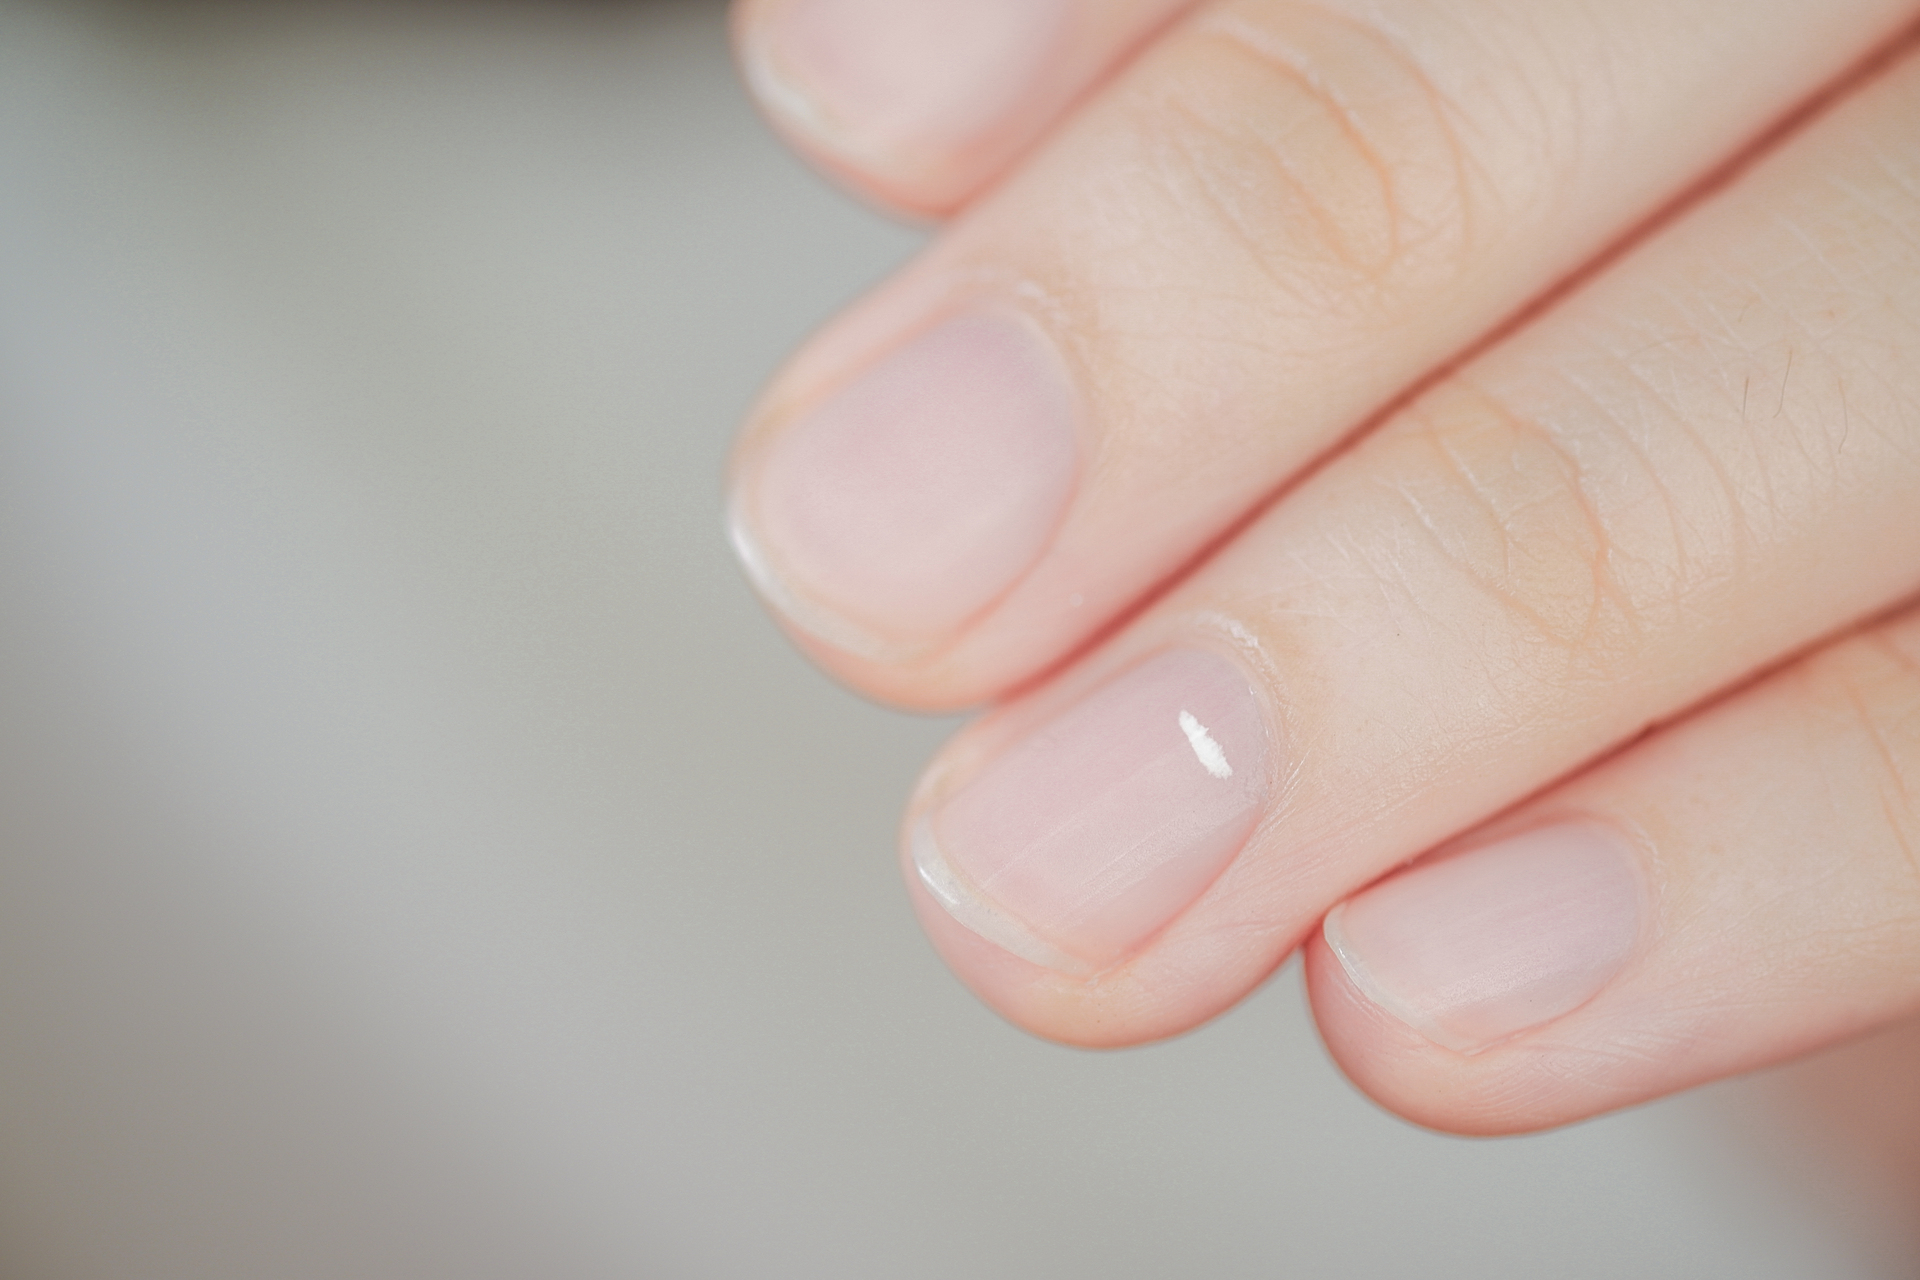 Na tym intrygującym obrazku możemy zobaczyć paznokcie z białymi przebarwieniami, które nadają im niezwykły i unikalny wygląd. Te subtelne białe plamy, rozmieszczone na powierzchni paznokci, tworzą interesujący kontrast i mogą być źródłem zaciekawienia. Przebarwienia te mogą być wynikiem różnych czynników, takich jak infekcje, zaburzenia pigmentacji lub urazy, co sprawia, że paznokcie stają się niepowtarzalne i godne uwagi